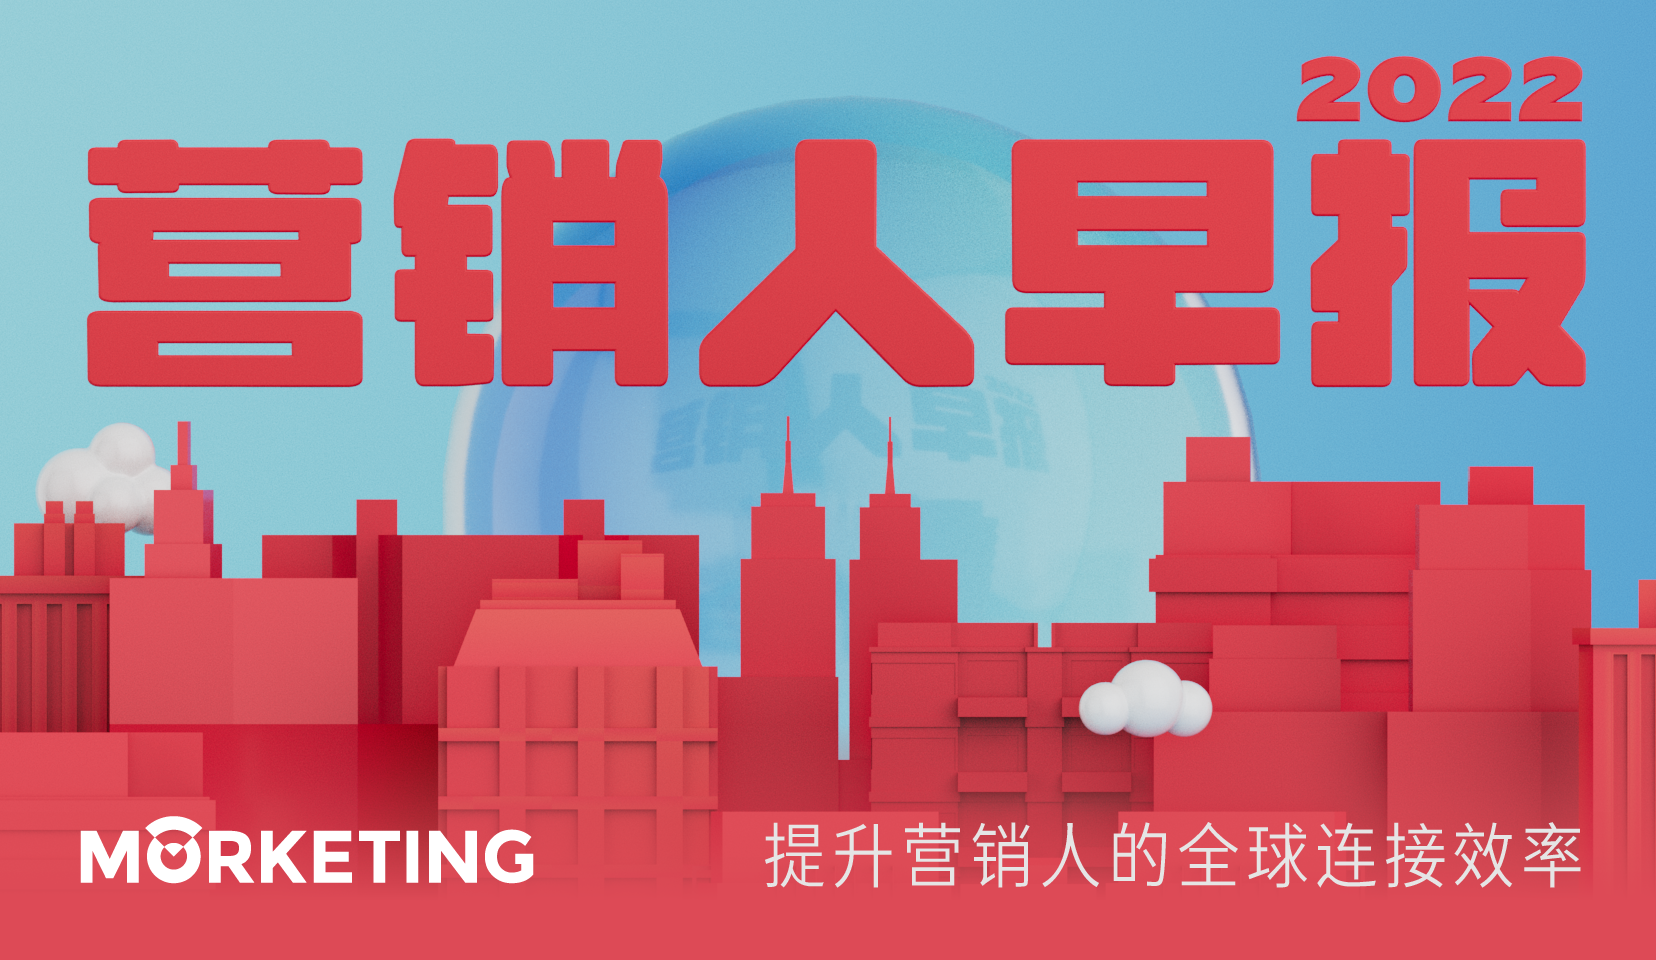 Morketing每日监测9.01：“奈雪生活”全球首店在深圳南山海岸城亮相；腾讯音乐与Billboard达成深度战略合作